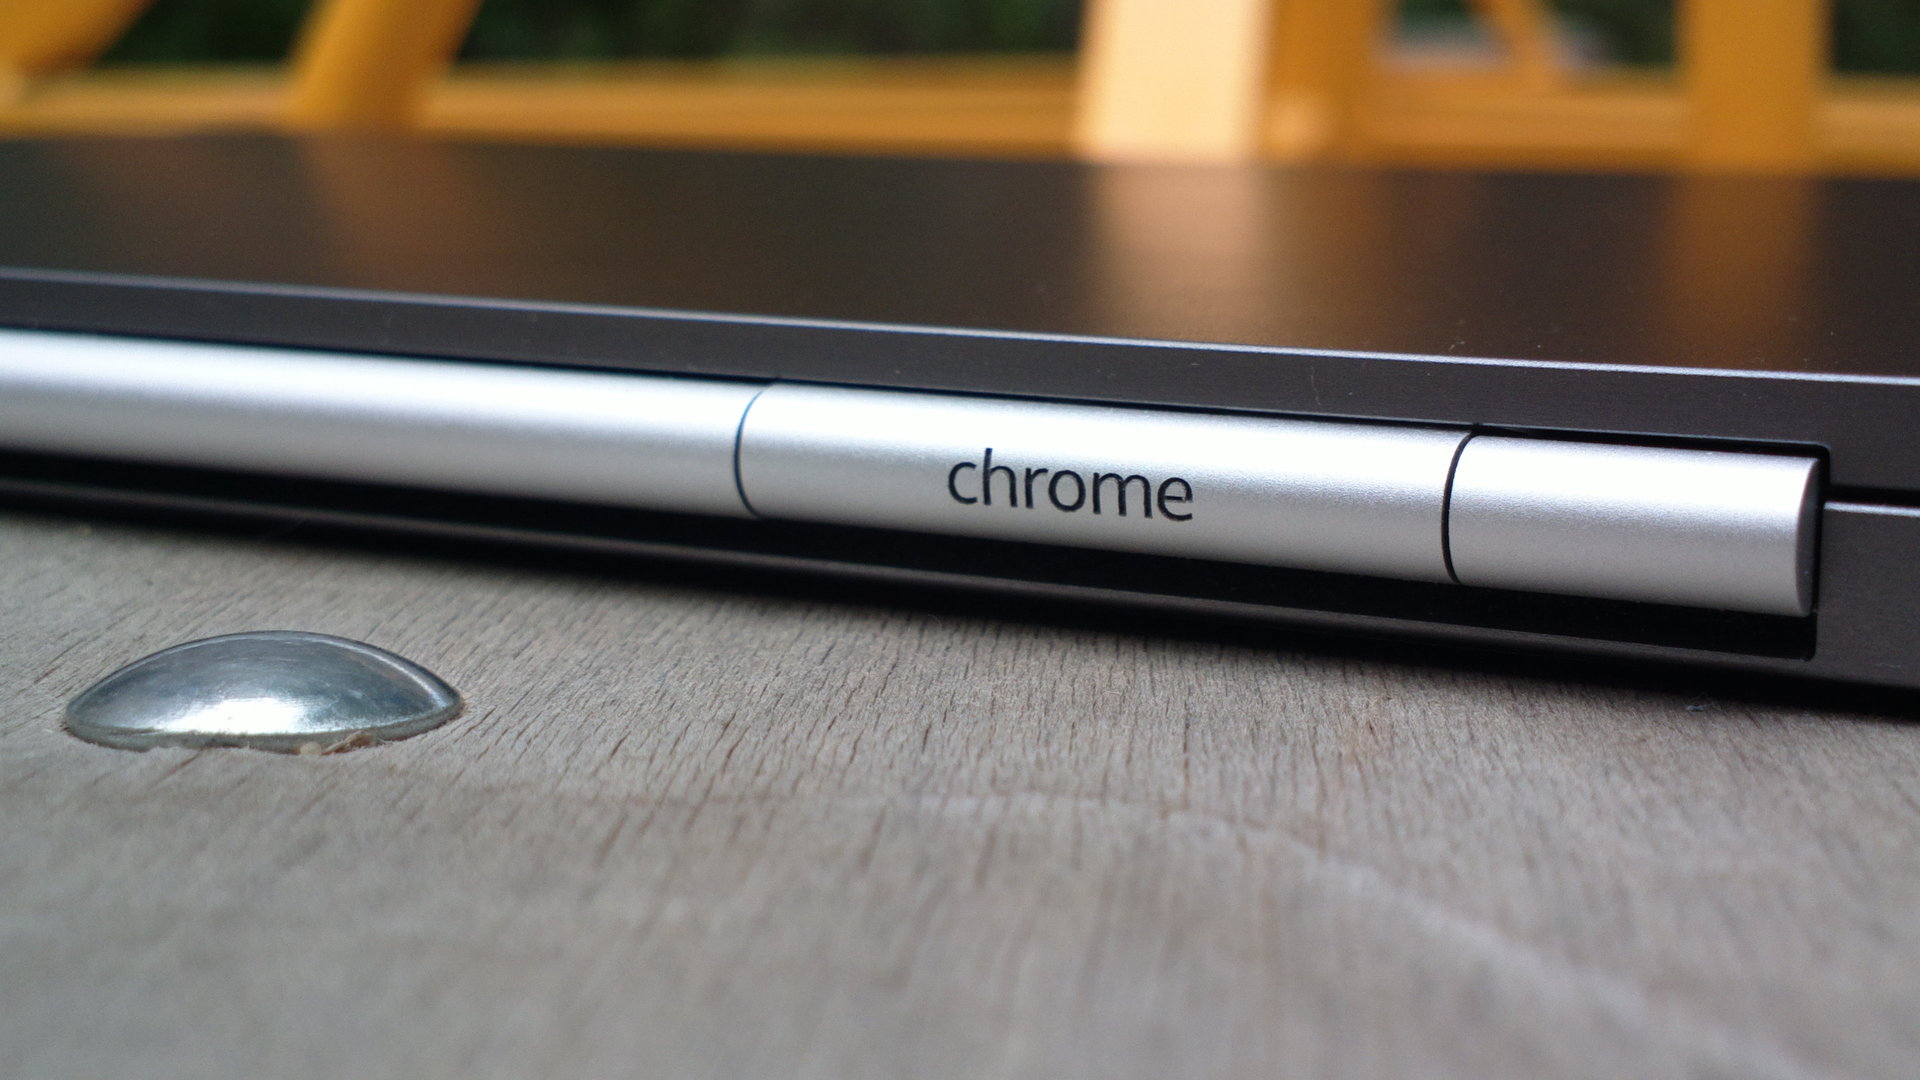 Хотите Chromebook Pixel by Asus со встроенной Yota 4G?